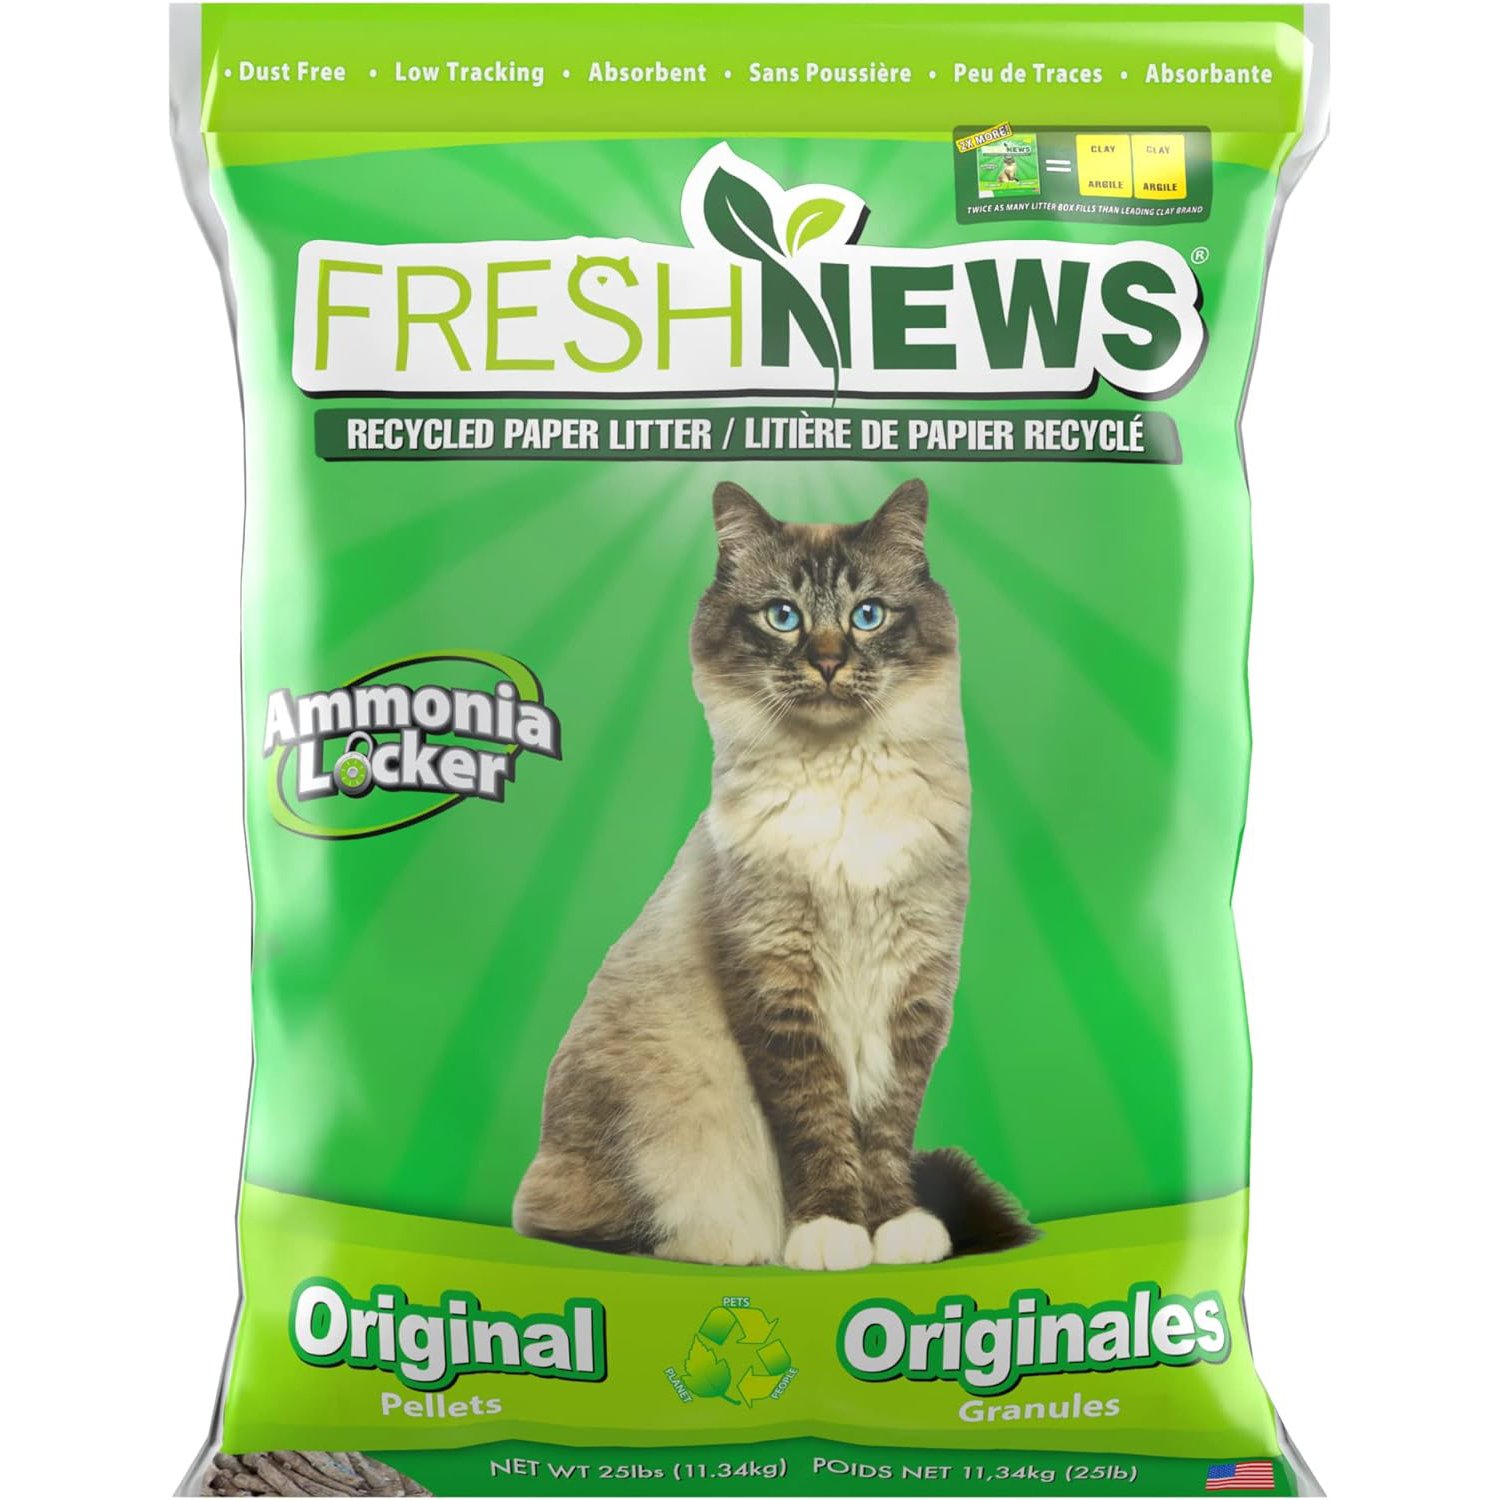 Fresh News Recycled Paper, Original Pellet Cat Litter